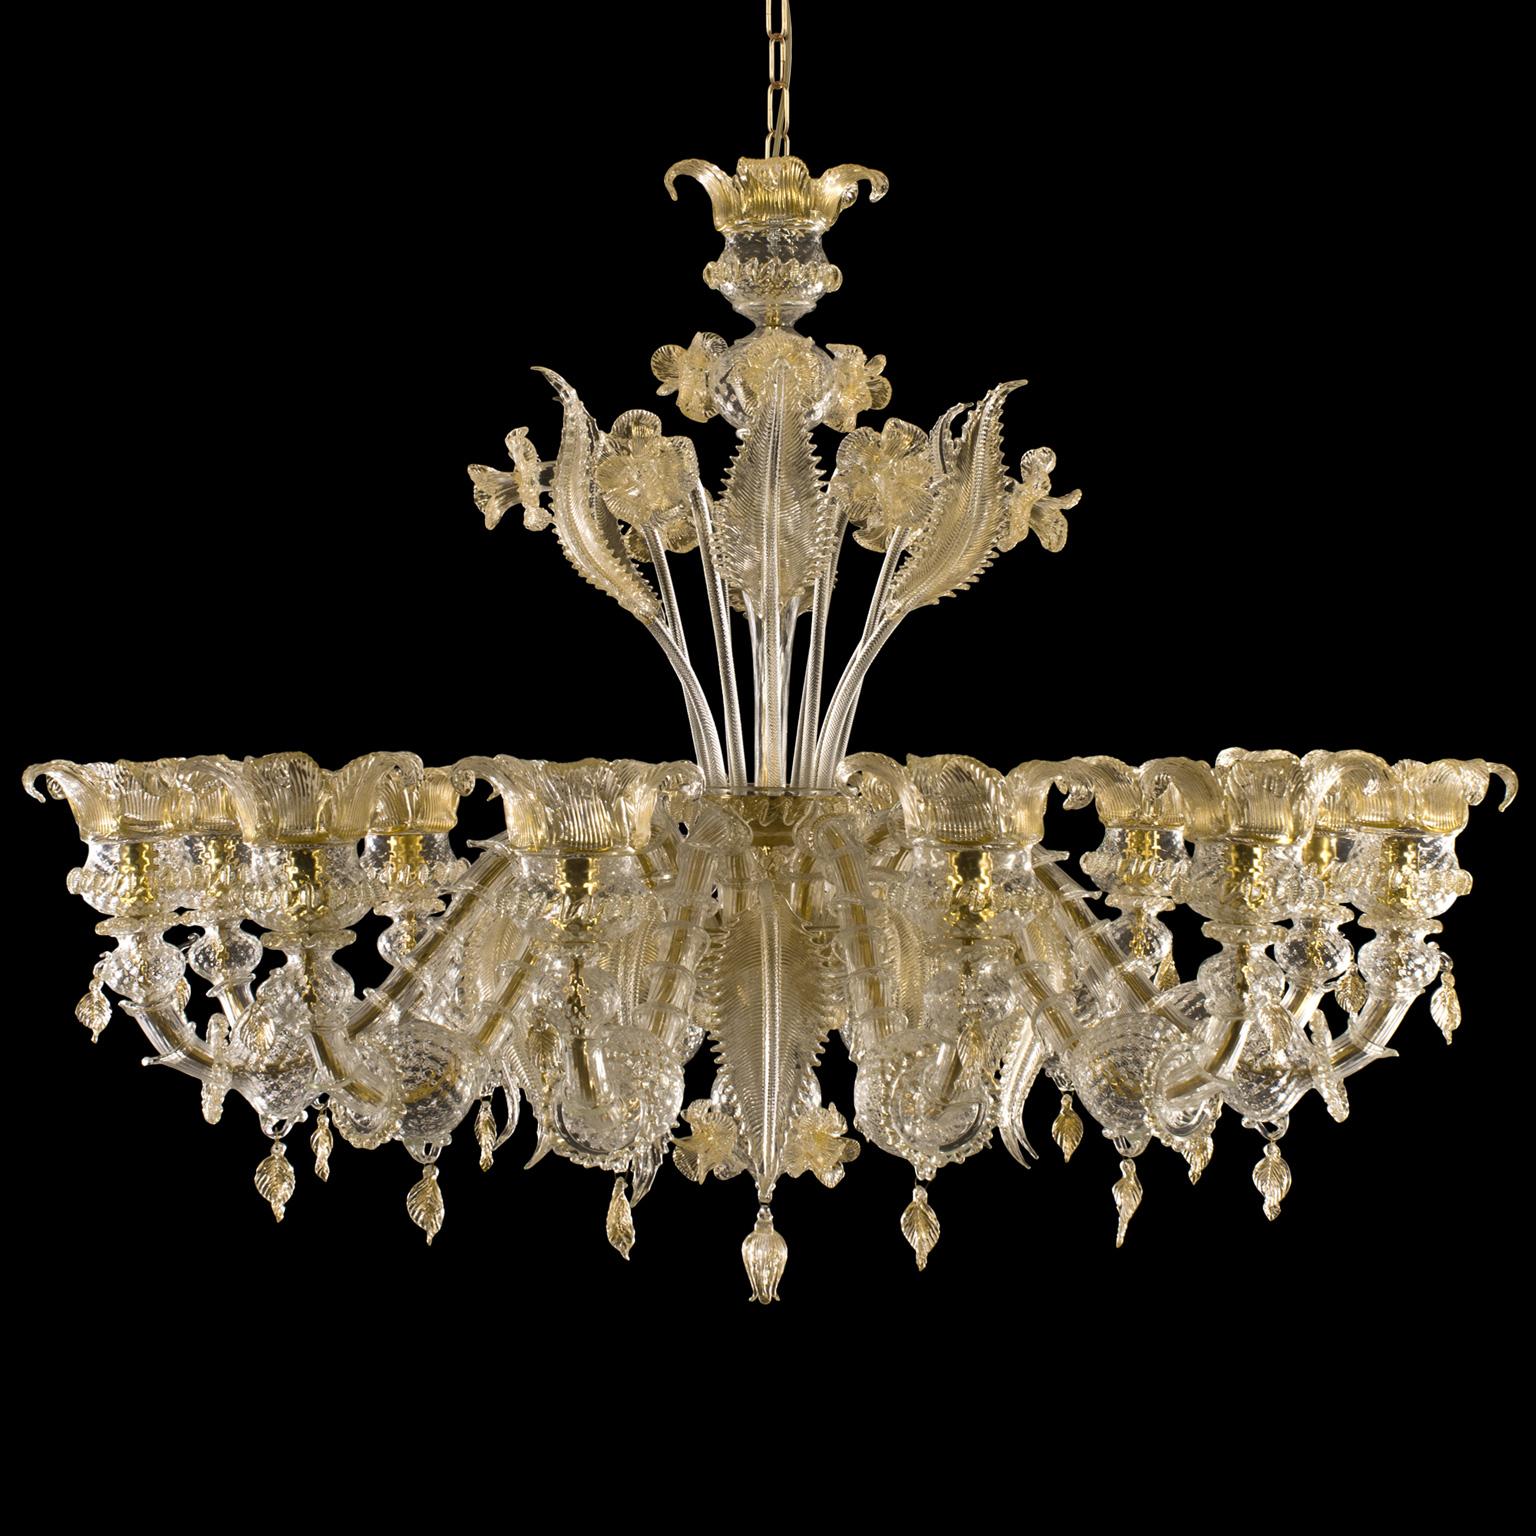 Der Muranoglas-Kronleuchter Regale ist ein romantisches Beleuchtungsobjekt, inspiriert von den luxuriösen Sälen der venezianischen Gebäude am Canal Grande.
Spezielles Set zusammengestellt von:
1 x Kronleuchter 12 Lichter Rezzonico Regale von